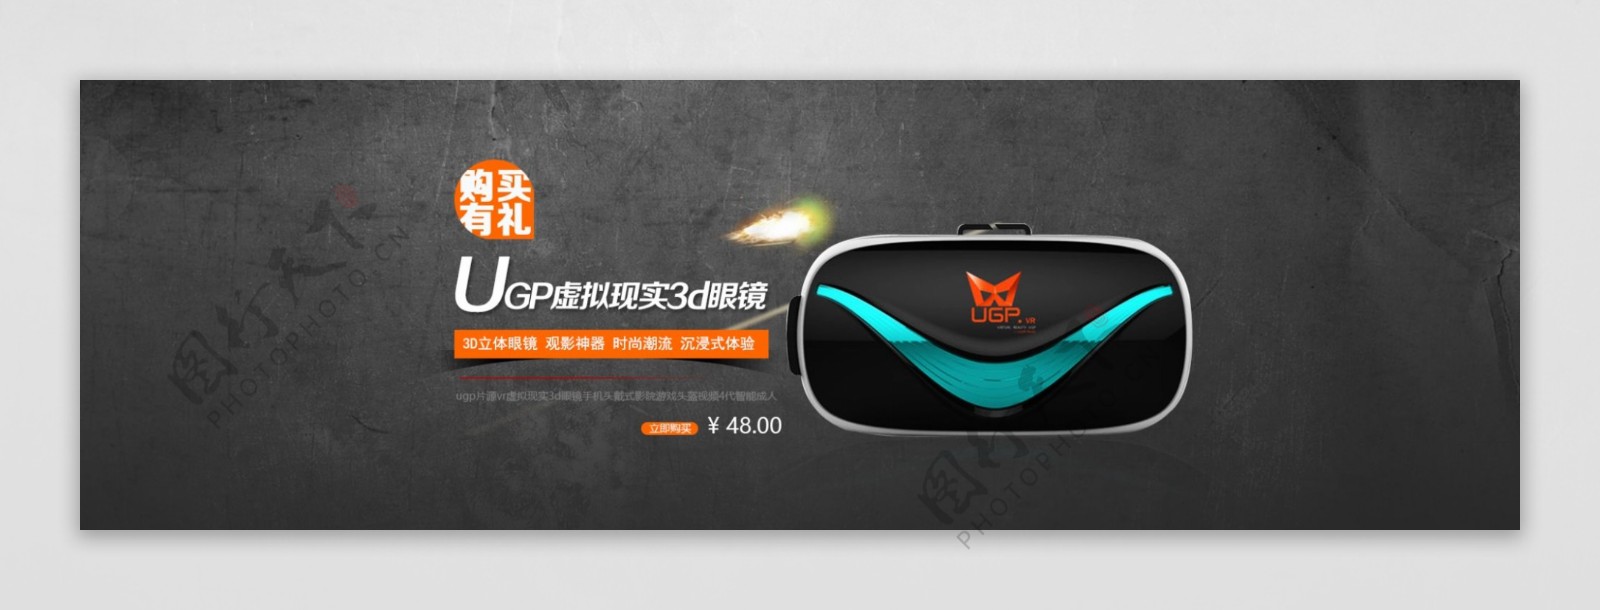 淘宝虚拟现实VR眼镜UGP海报